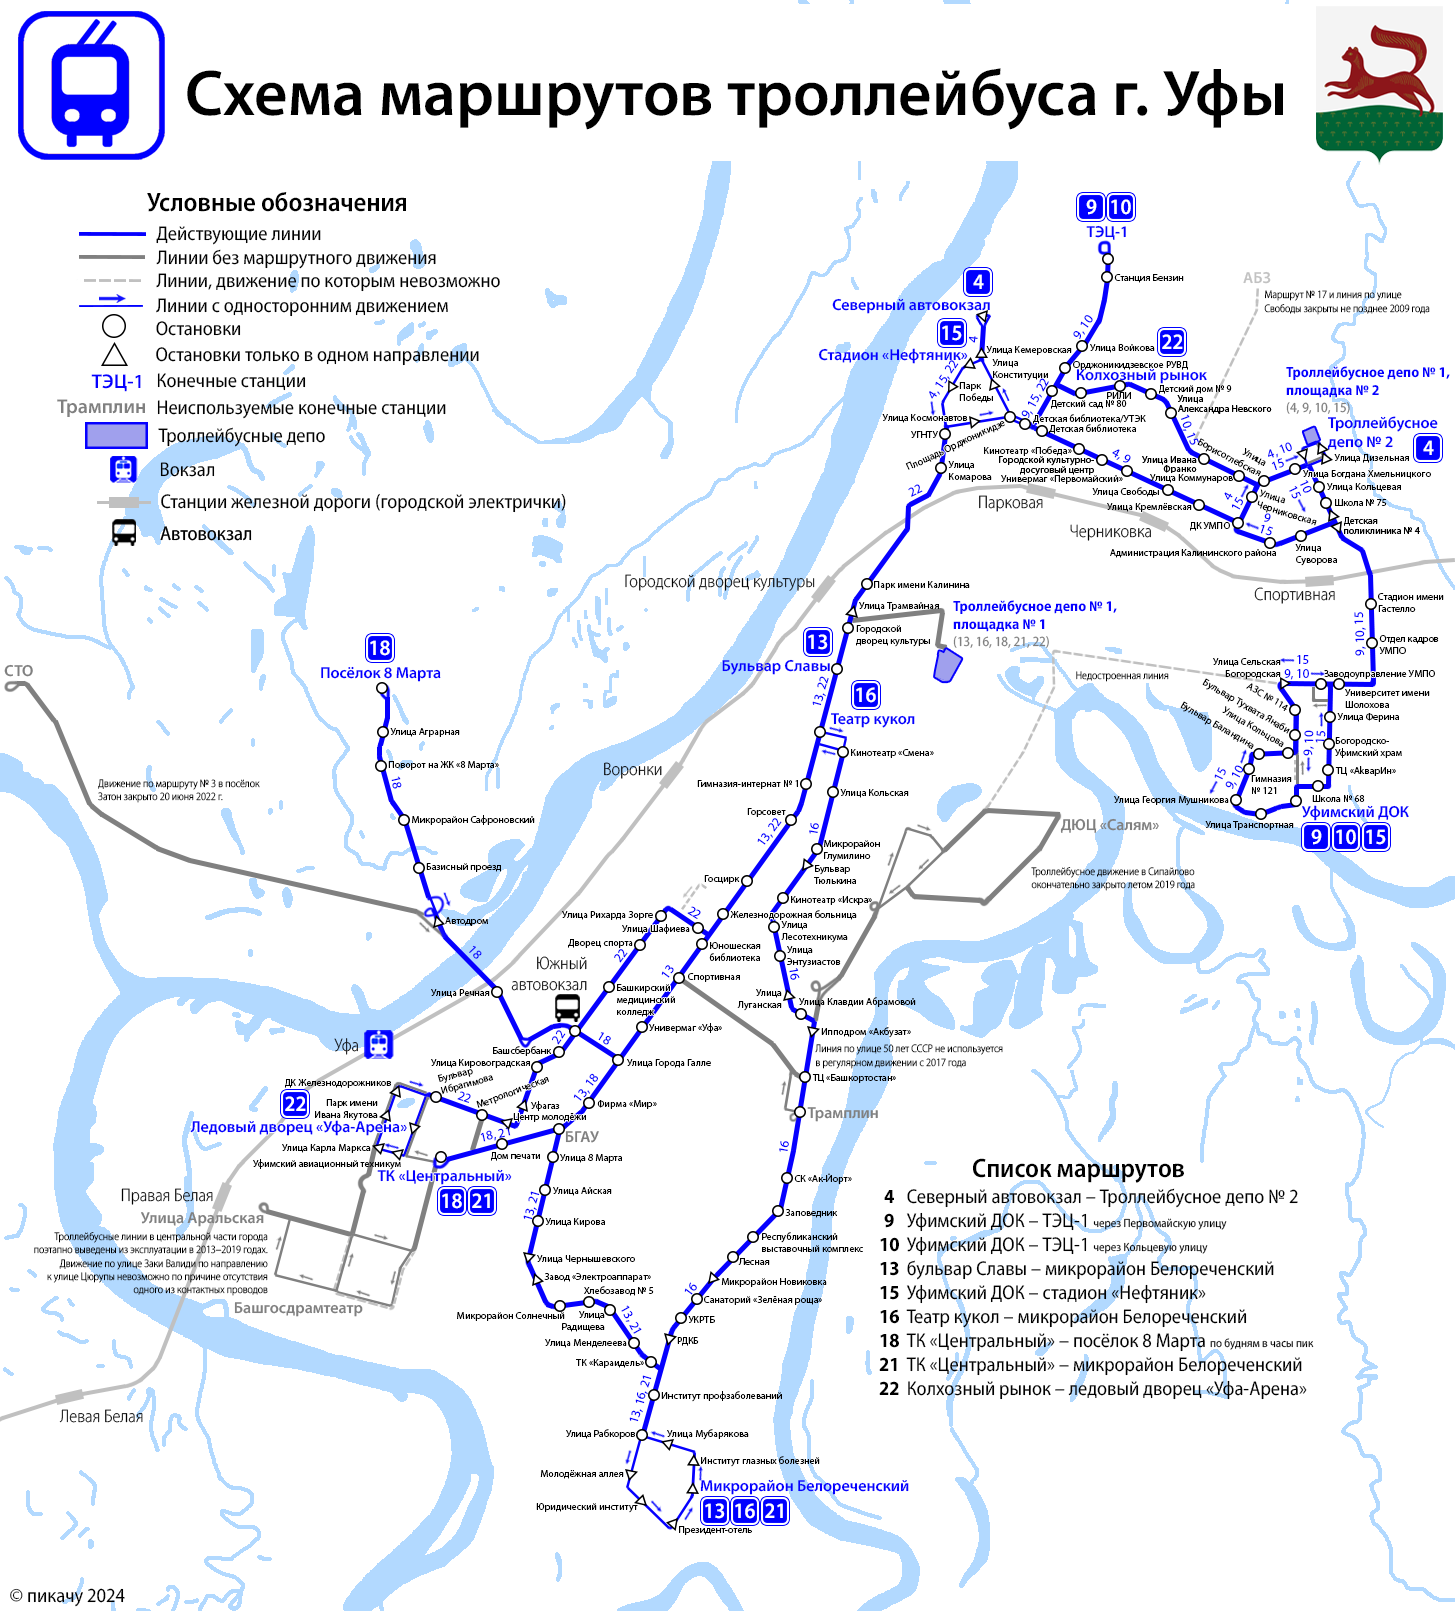 Ufa — Maps